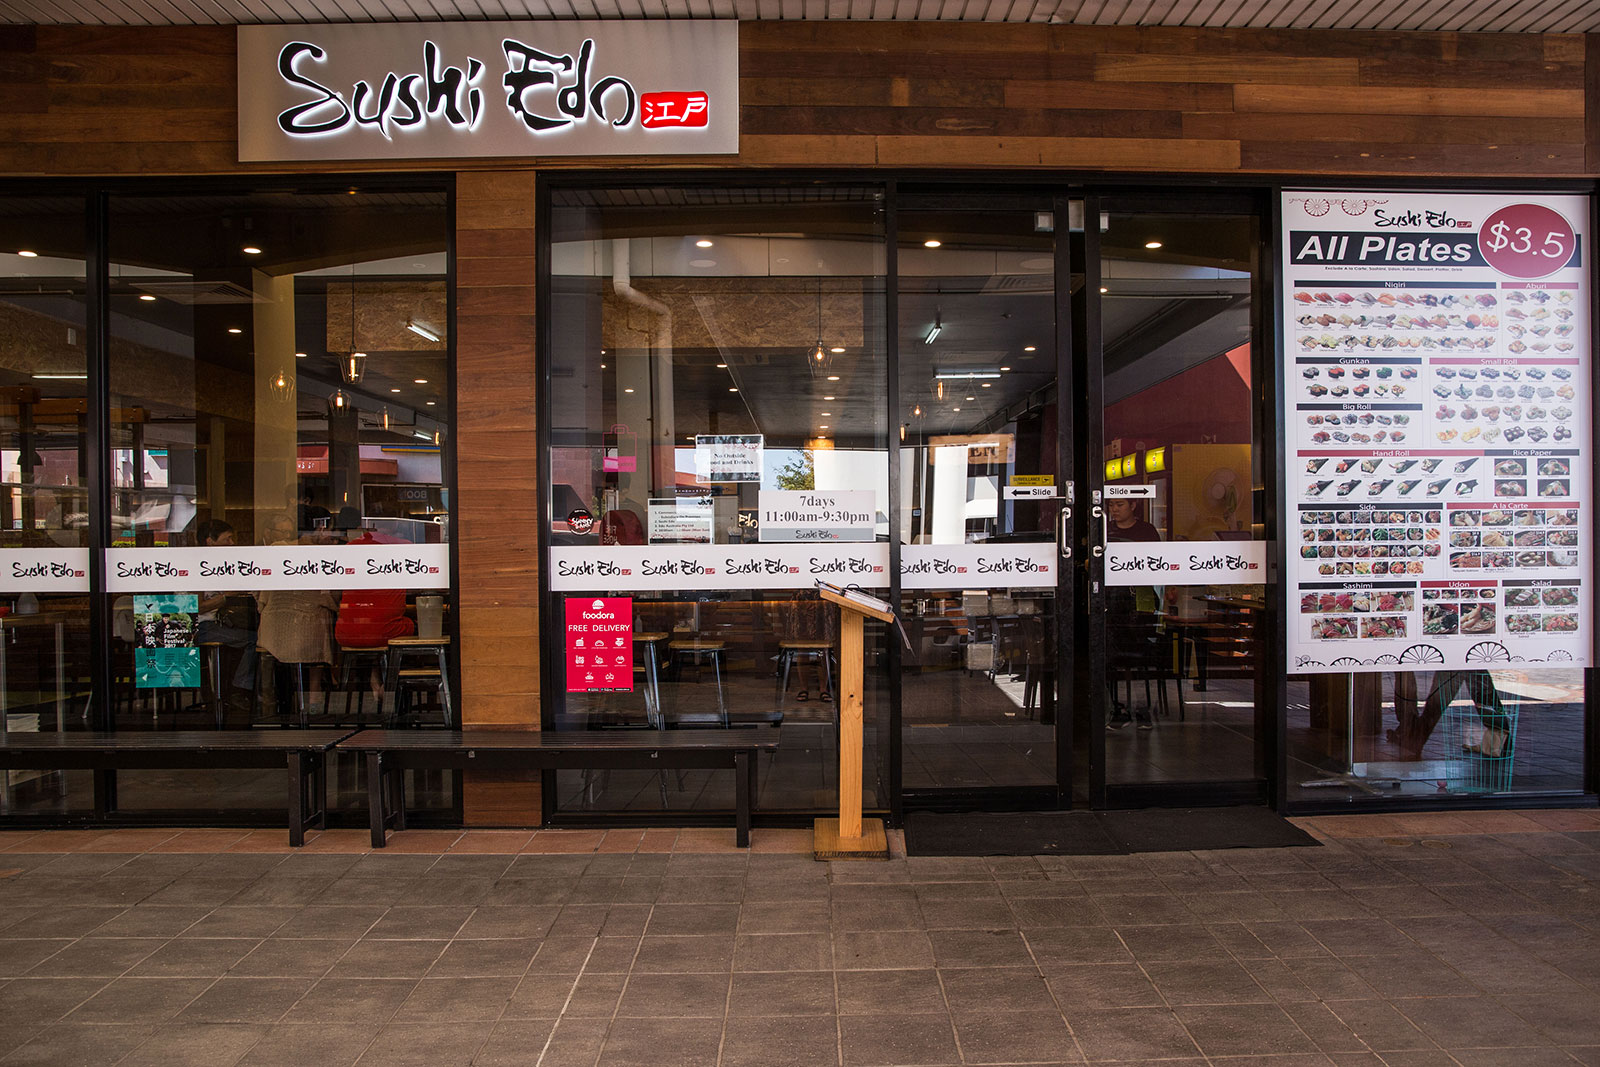 Shopfront SushiEdo - Sushi Edo